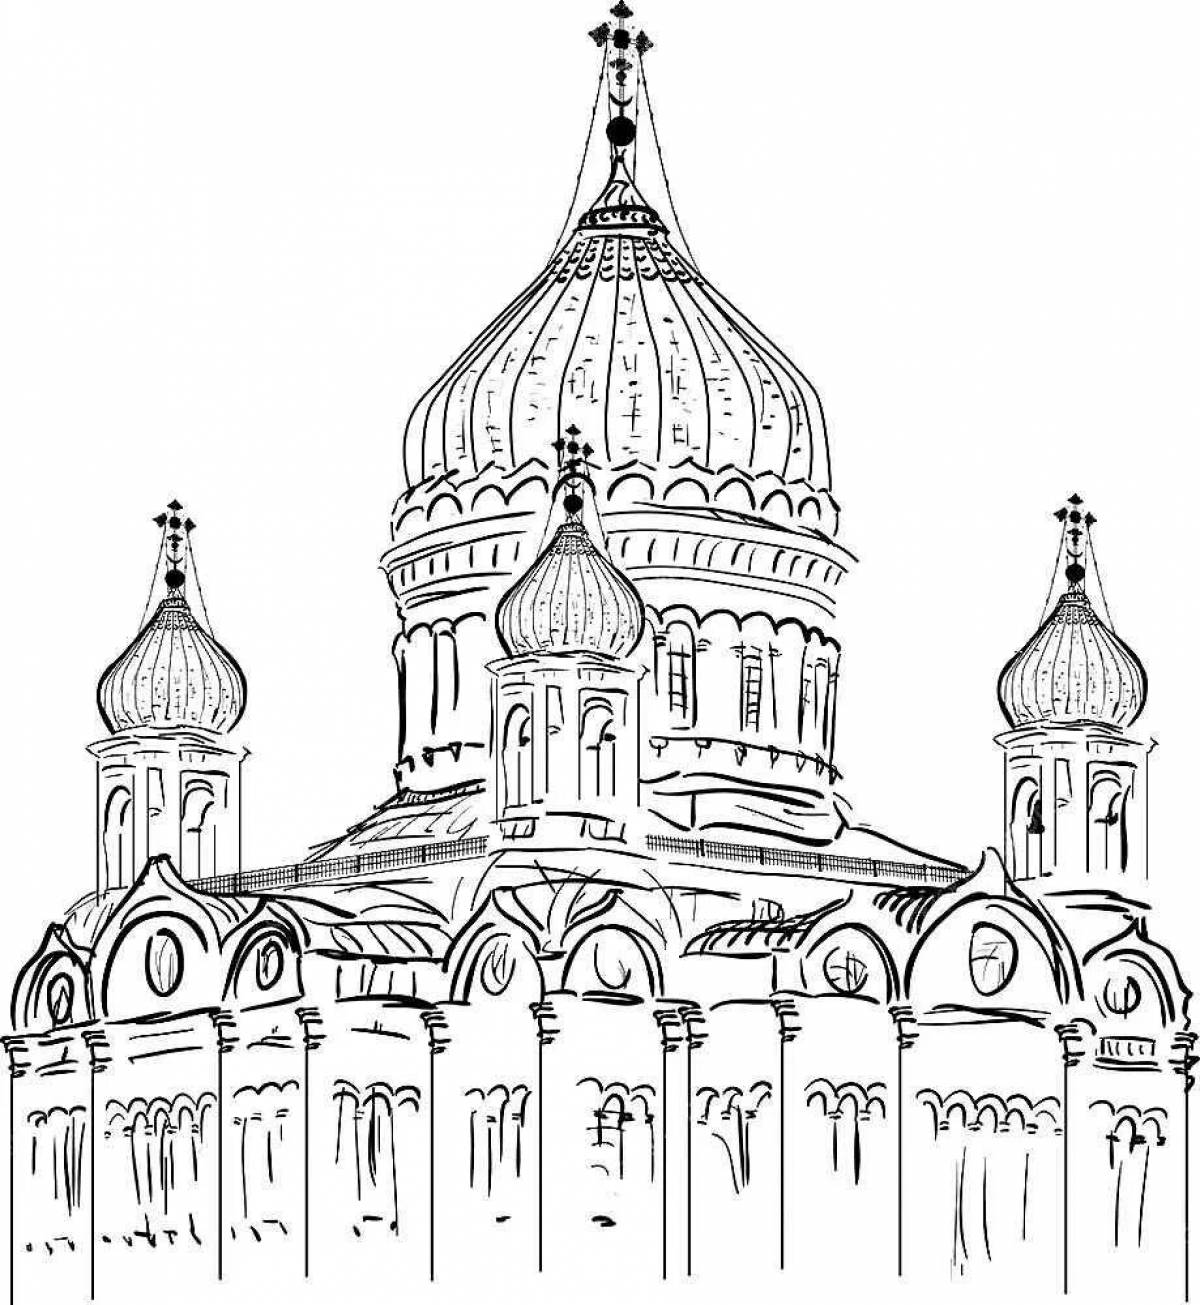 Купол церкви: векторные изображения и иллюстрации, которые можно скачать бесплатно | Freepik